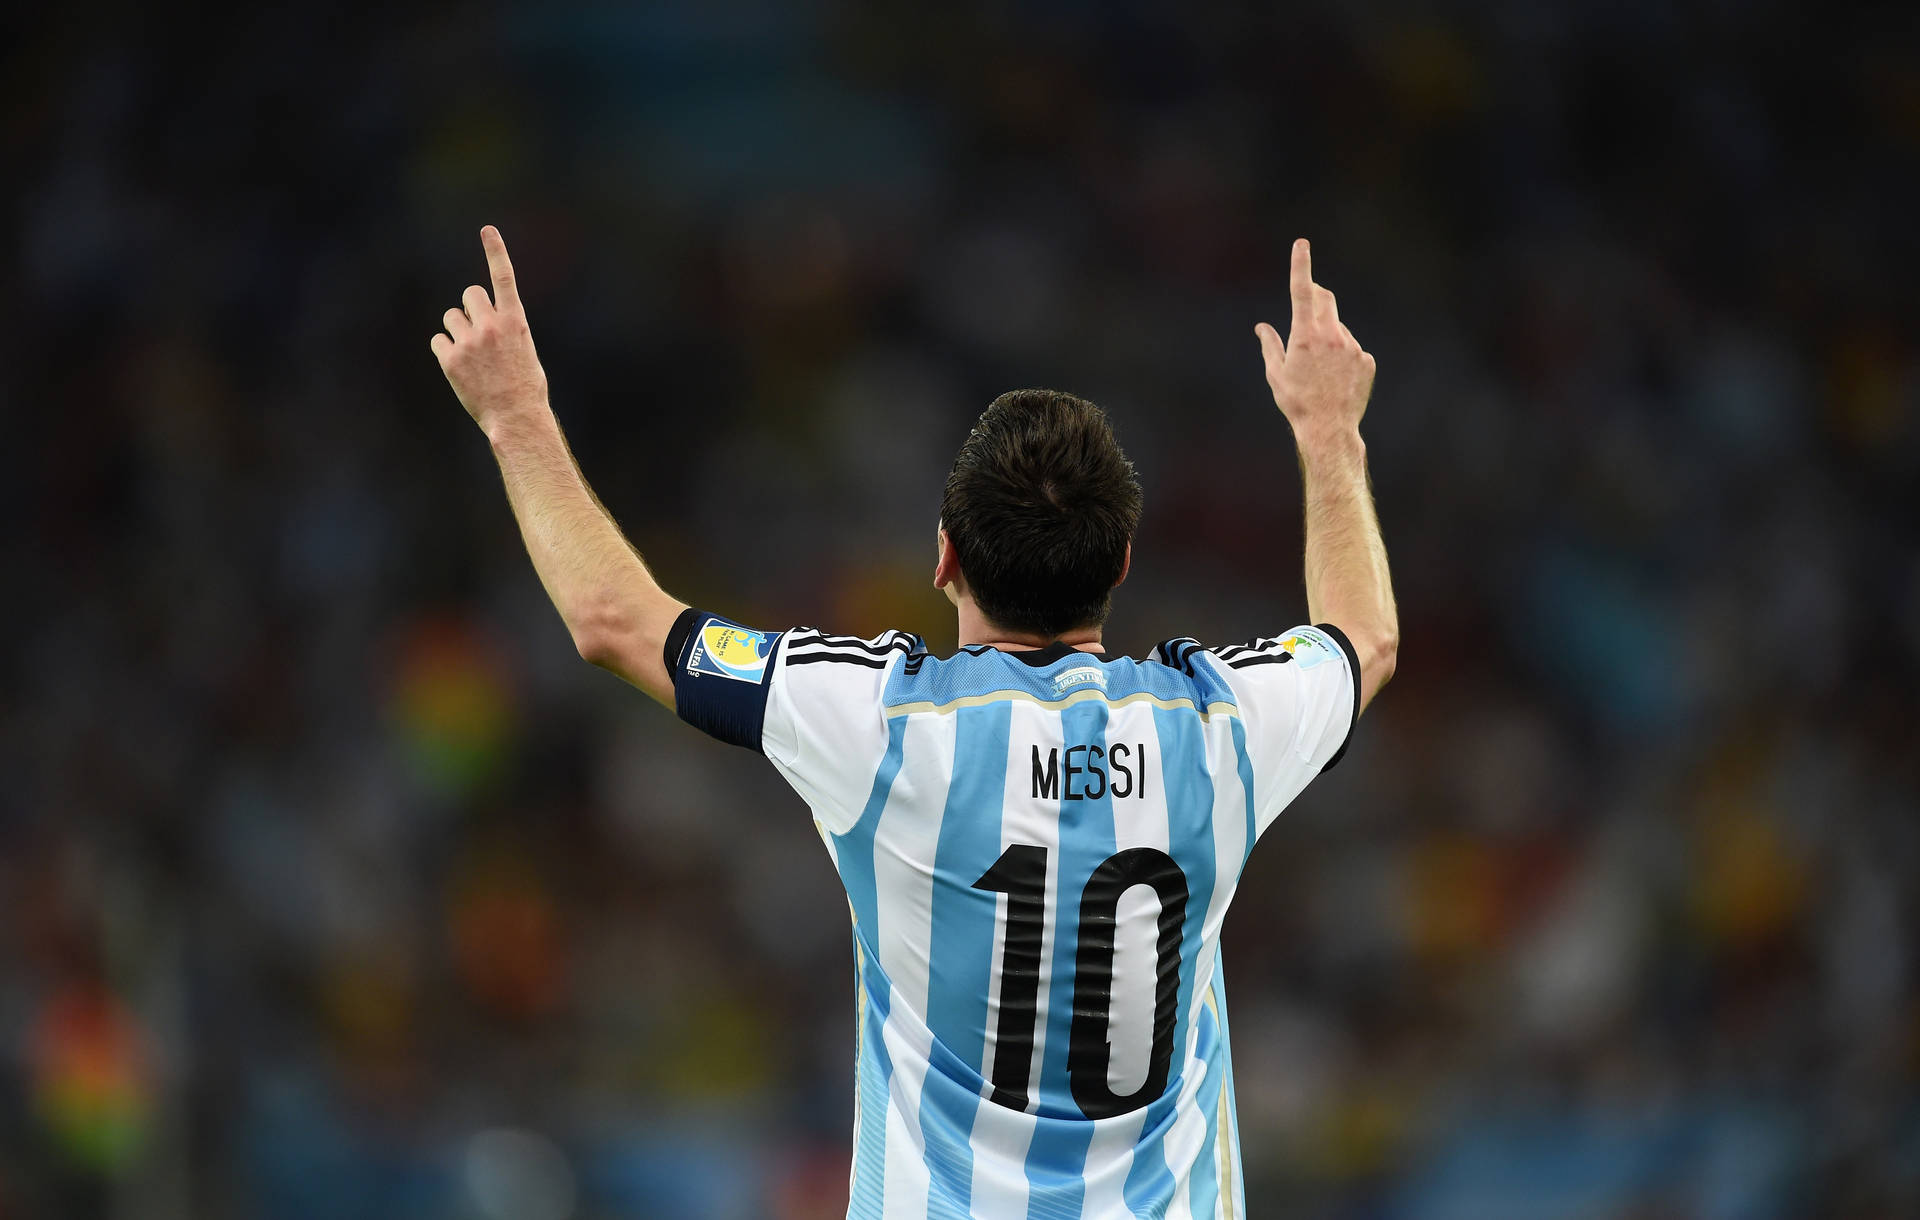 Fondode Pantalla Para Escritorio De Fútbol Genial Messi 10 Señalando. Fondo de pantalla